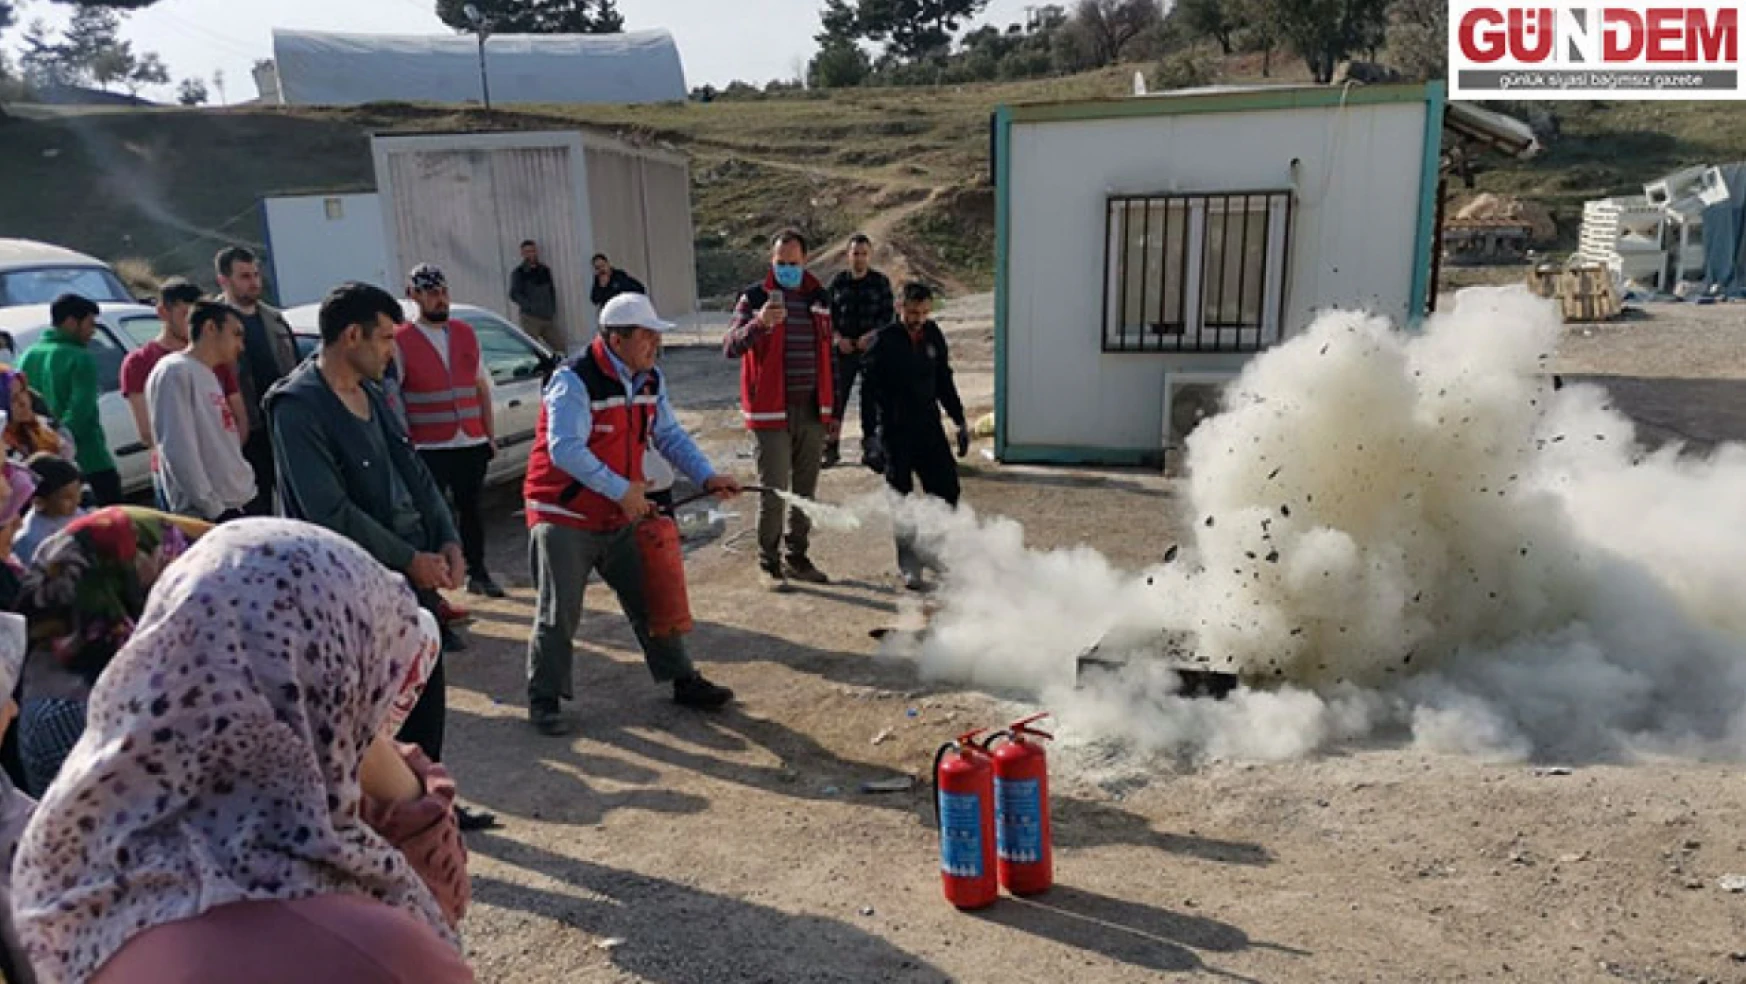 Edirne'den Kahramanmaraş'a giden gönüllü öğretmenler afetzedeleri yangın riskine karşı bilgilendirdi